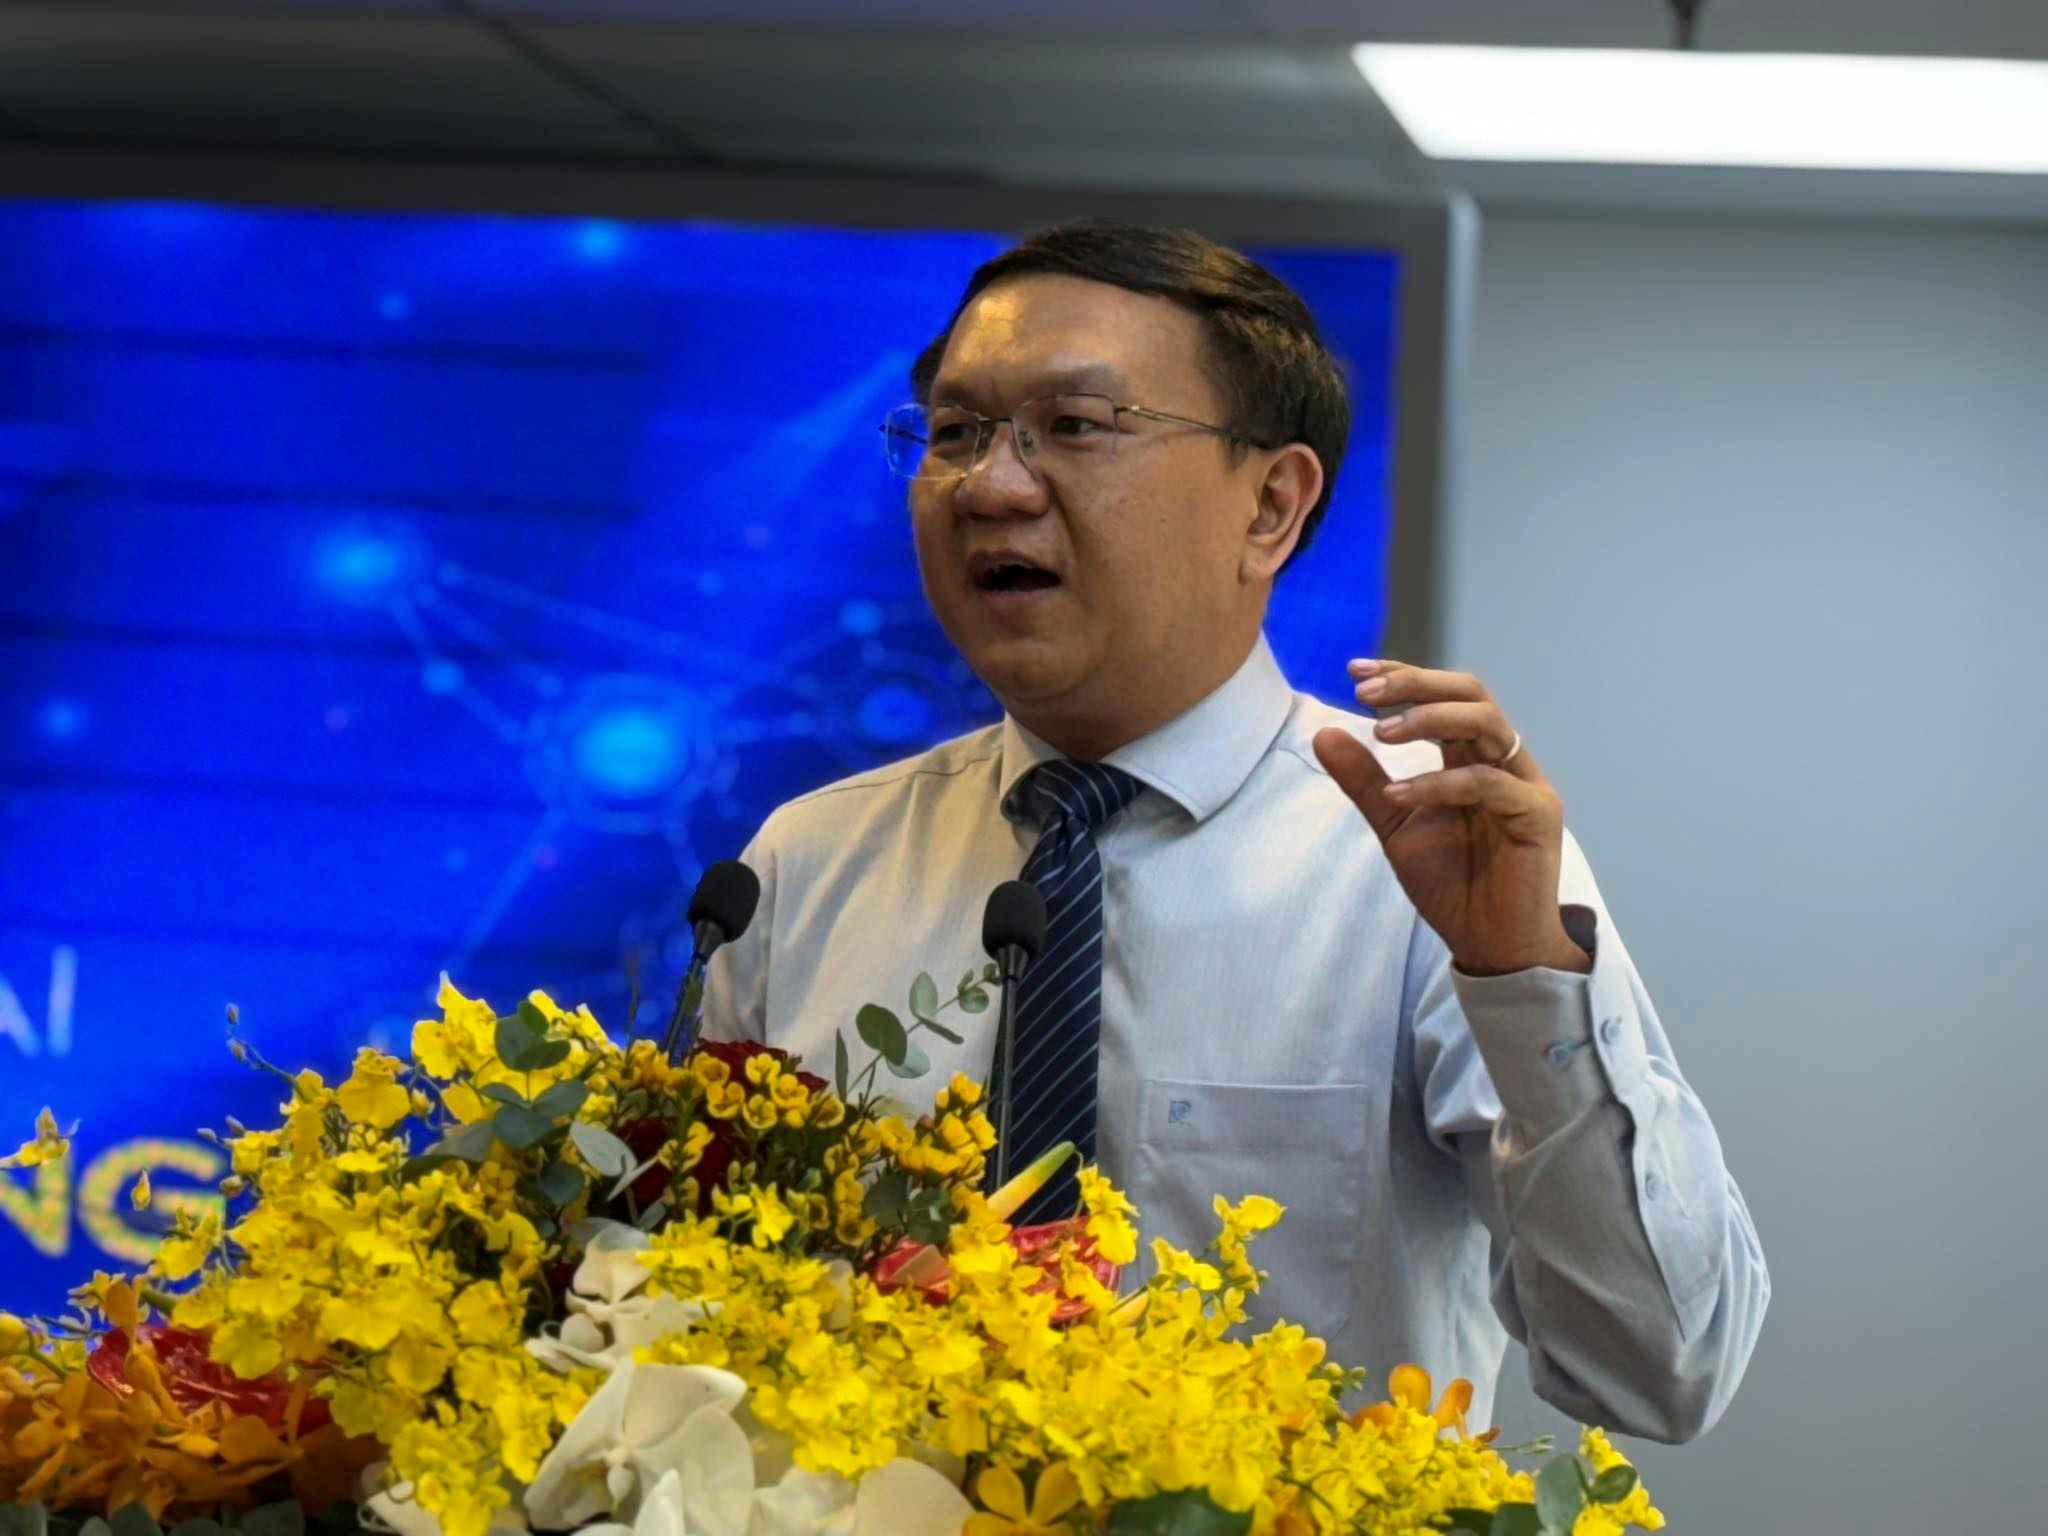 Ông Lâm Đình Thắng, Giám đốc Sở Thông tin và Truyền thông TPHCM nhấn mạnh ý nghĩa, tầm quan trọng của việc triển khai phần mềm lắng nghe mạng xã hội. Ảnh: Nguyễn Đăng